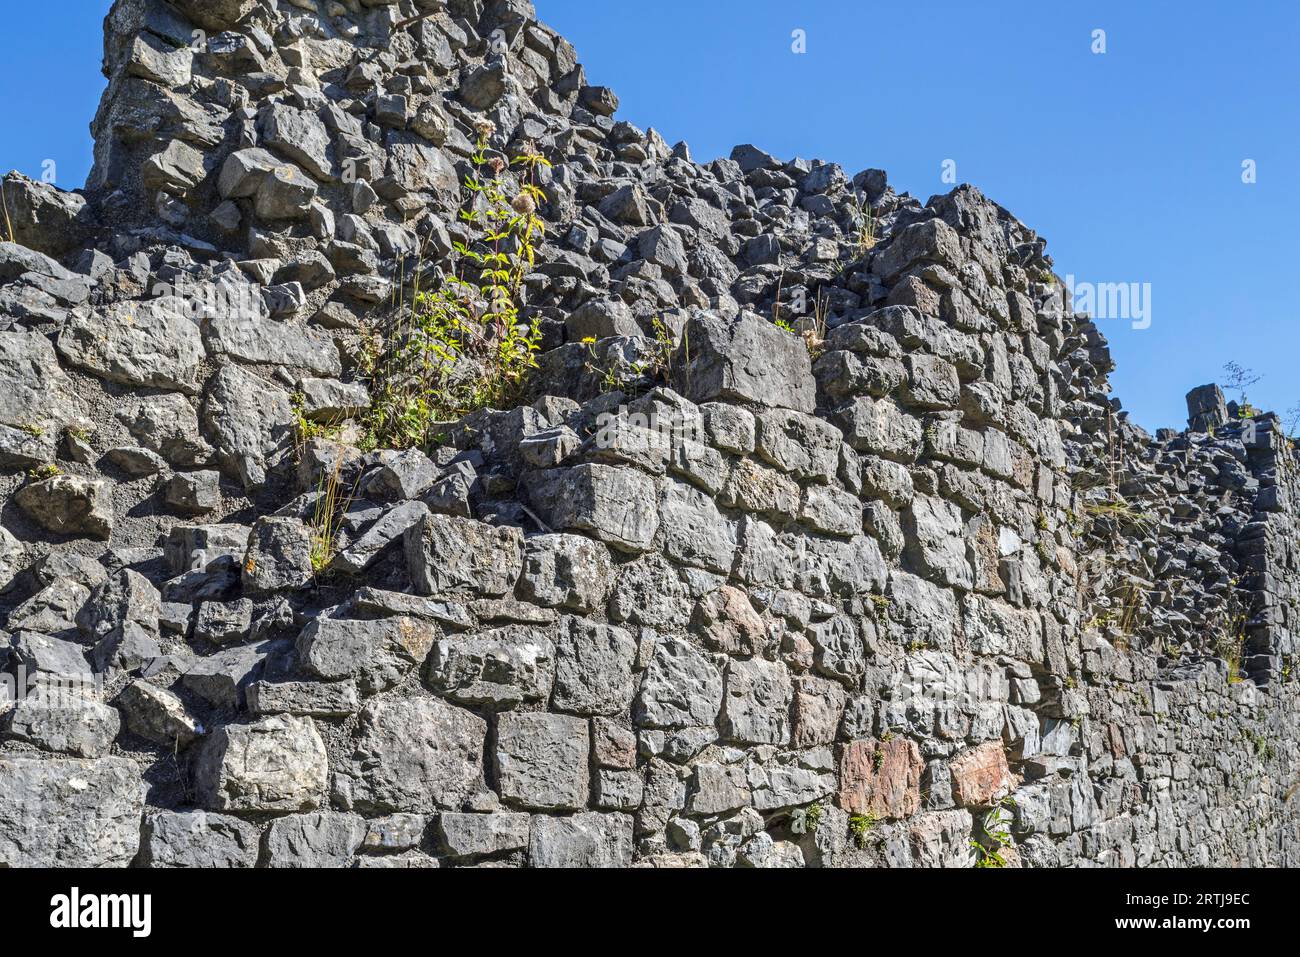 Spessa parete in pietra del castello medievale con due tipi di muratura, macerie all'interno e pietra regolarmente tagliata, chiamata conchiglia, all'esterno Foto Stock